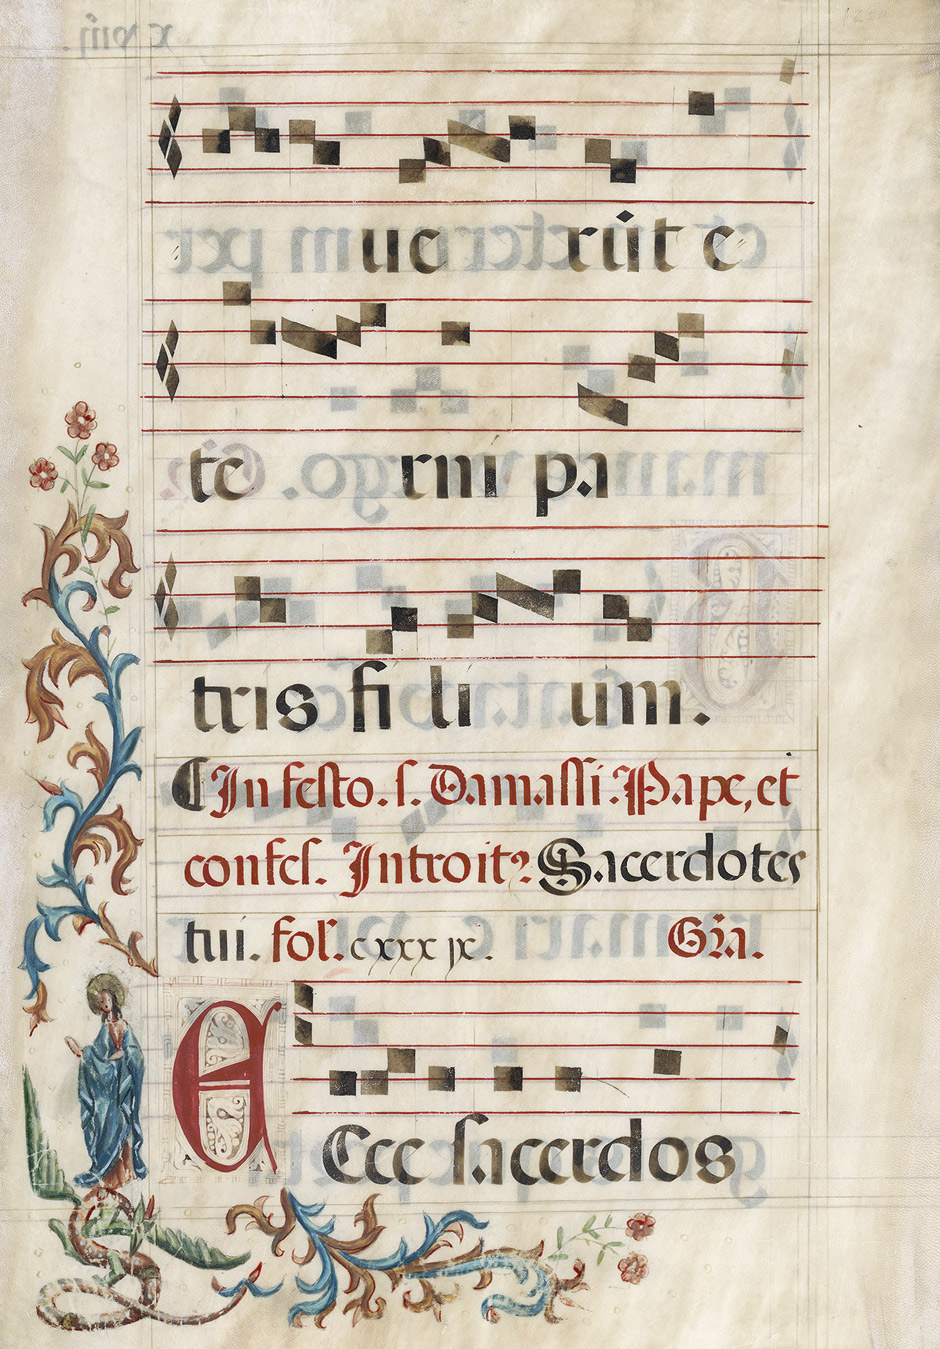 Lot 1010, Auction  115, Graduale, Einzelblatt aus einer liturgischen Monumentalhandschrift